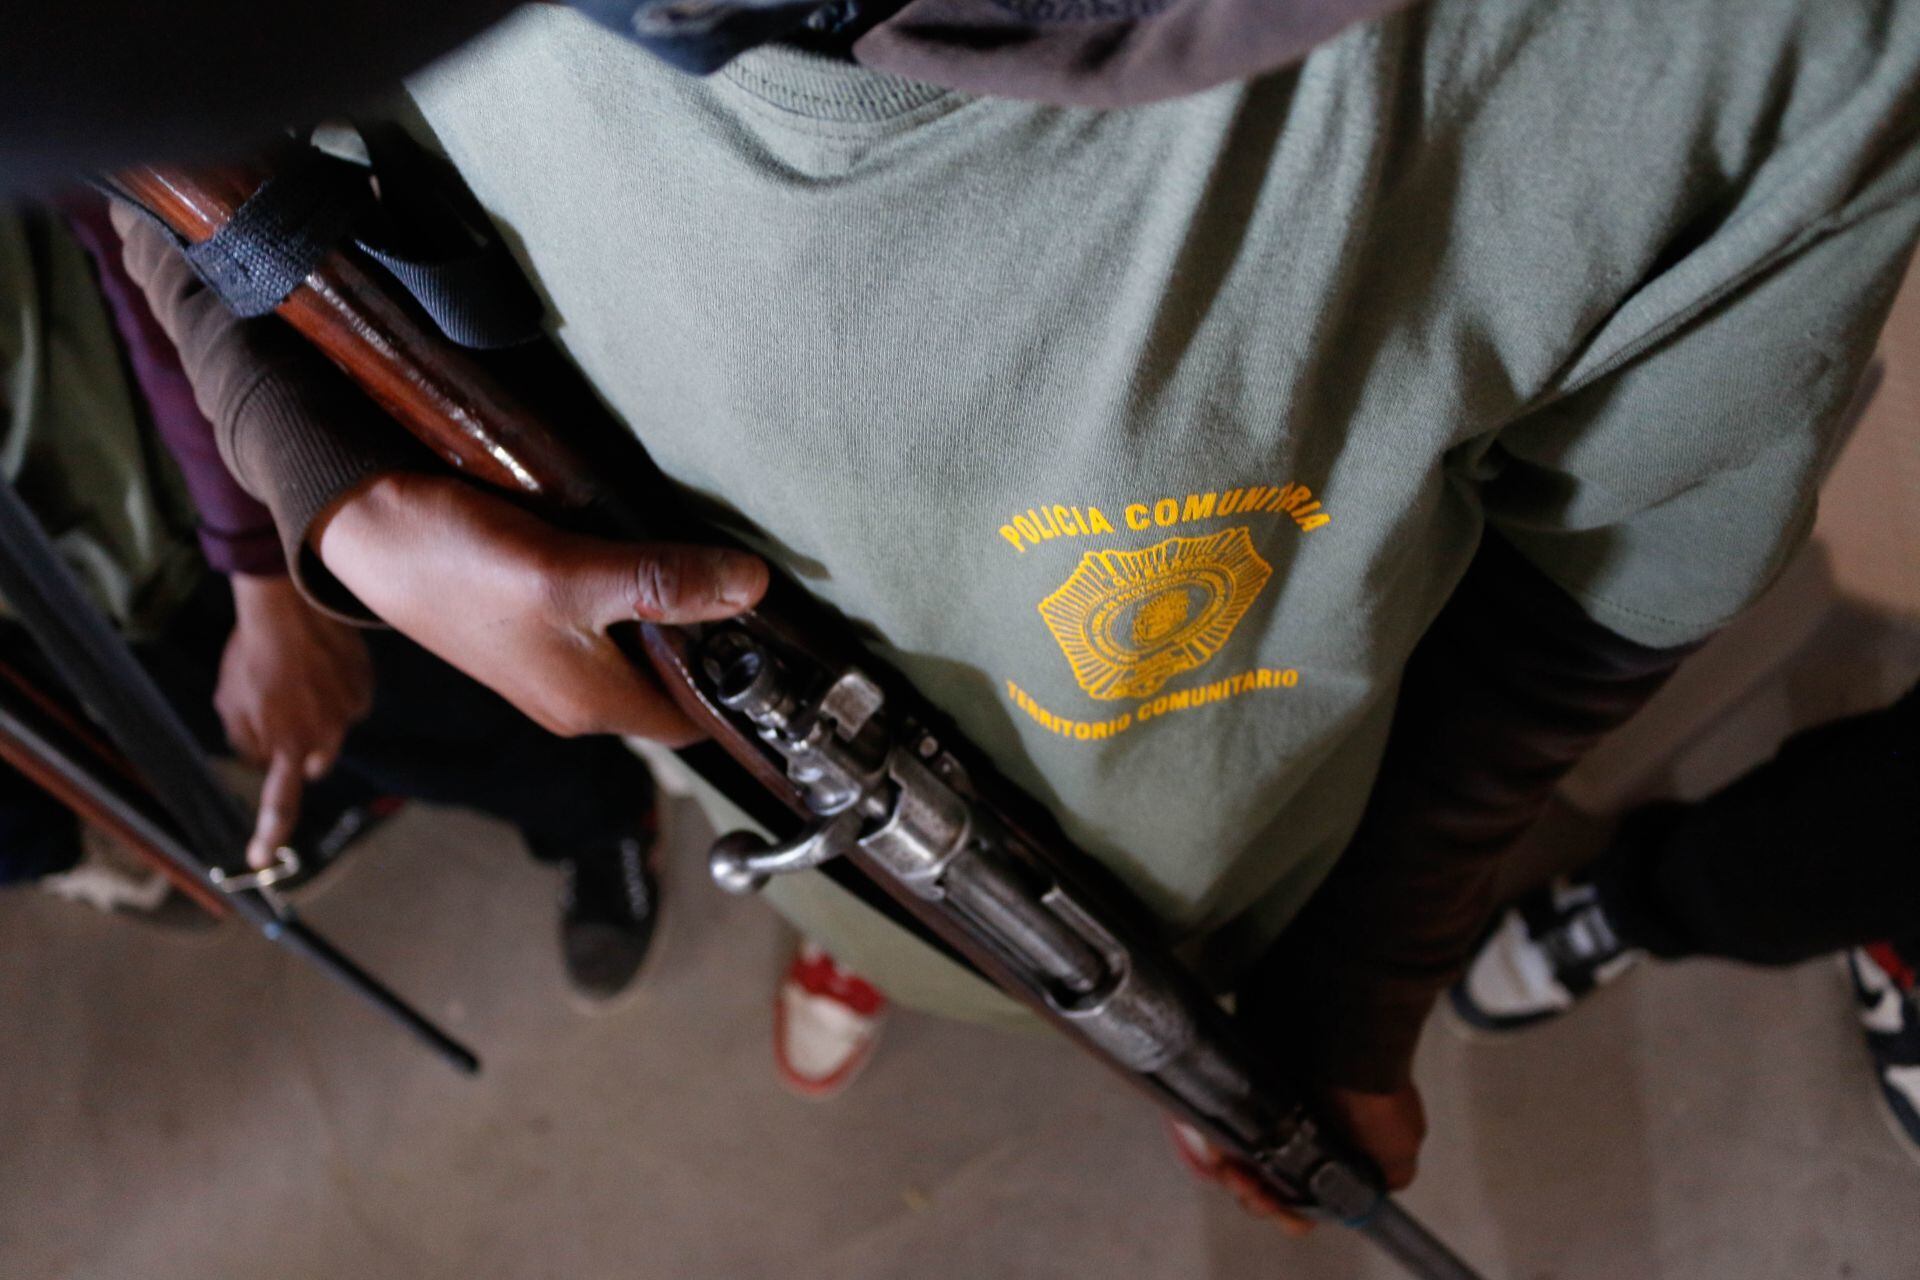 Menores armados en Ayahualtempa: Fiscalía de Guerrero inicia investigación 